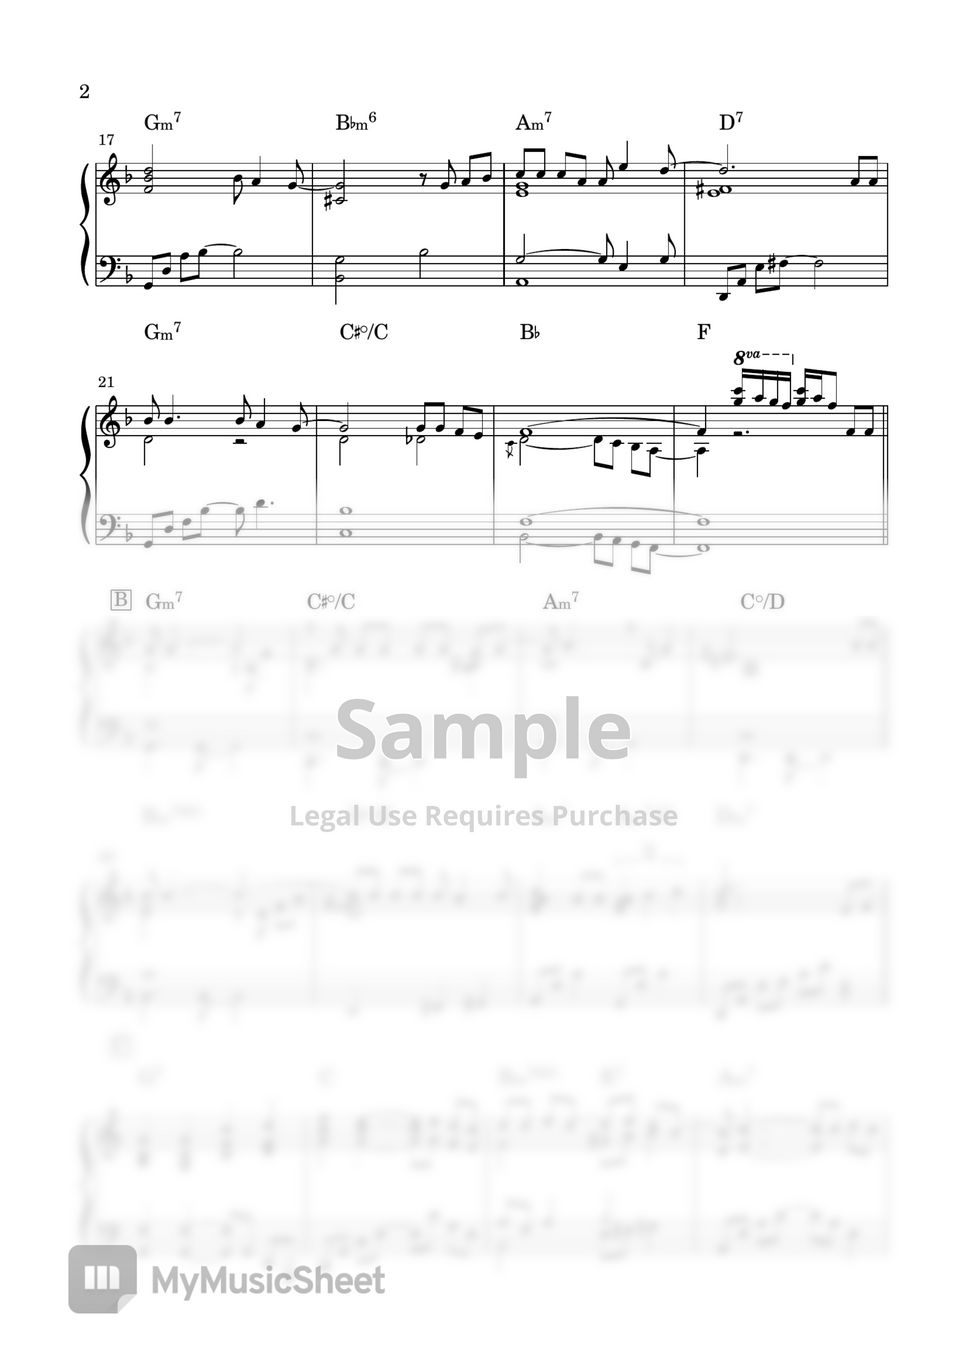 西城秀樹 - ラストシーン (piano ballad) by miiの楽譜棚